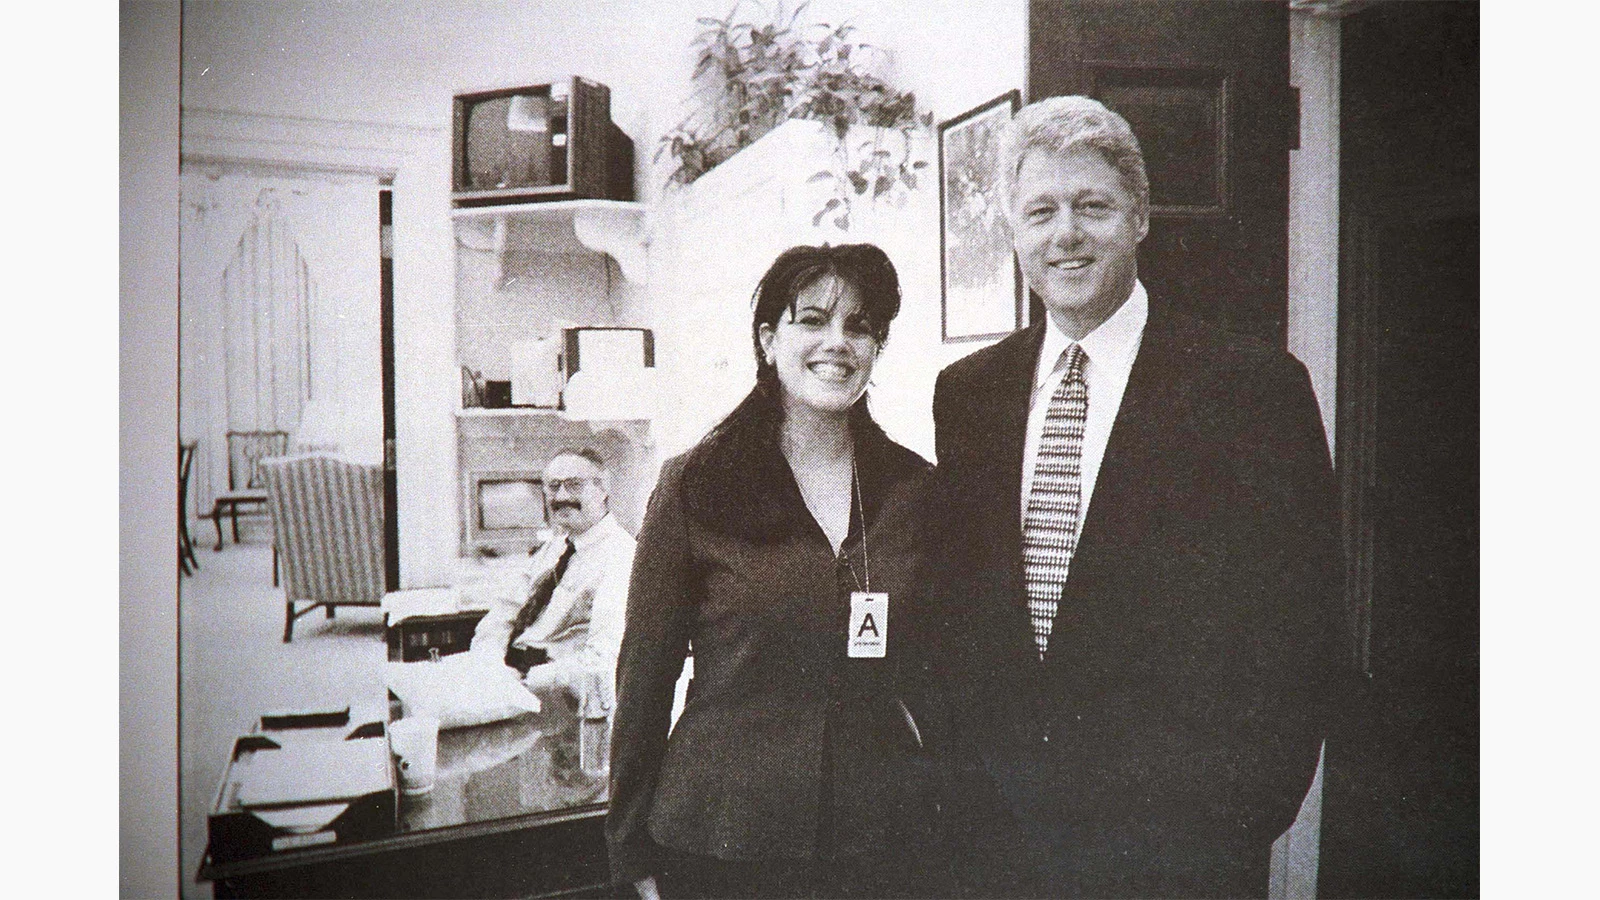 <p>На фото: Моника Левински и экс-президент США Билл Клинтон, 1 декабря 1998 года</p>